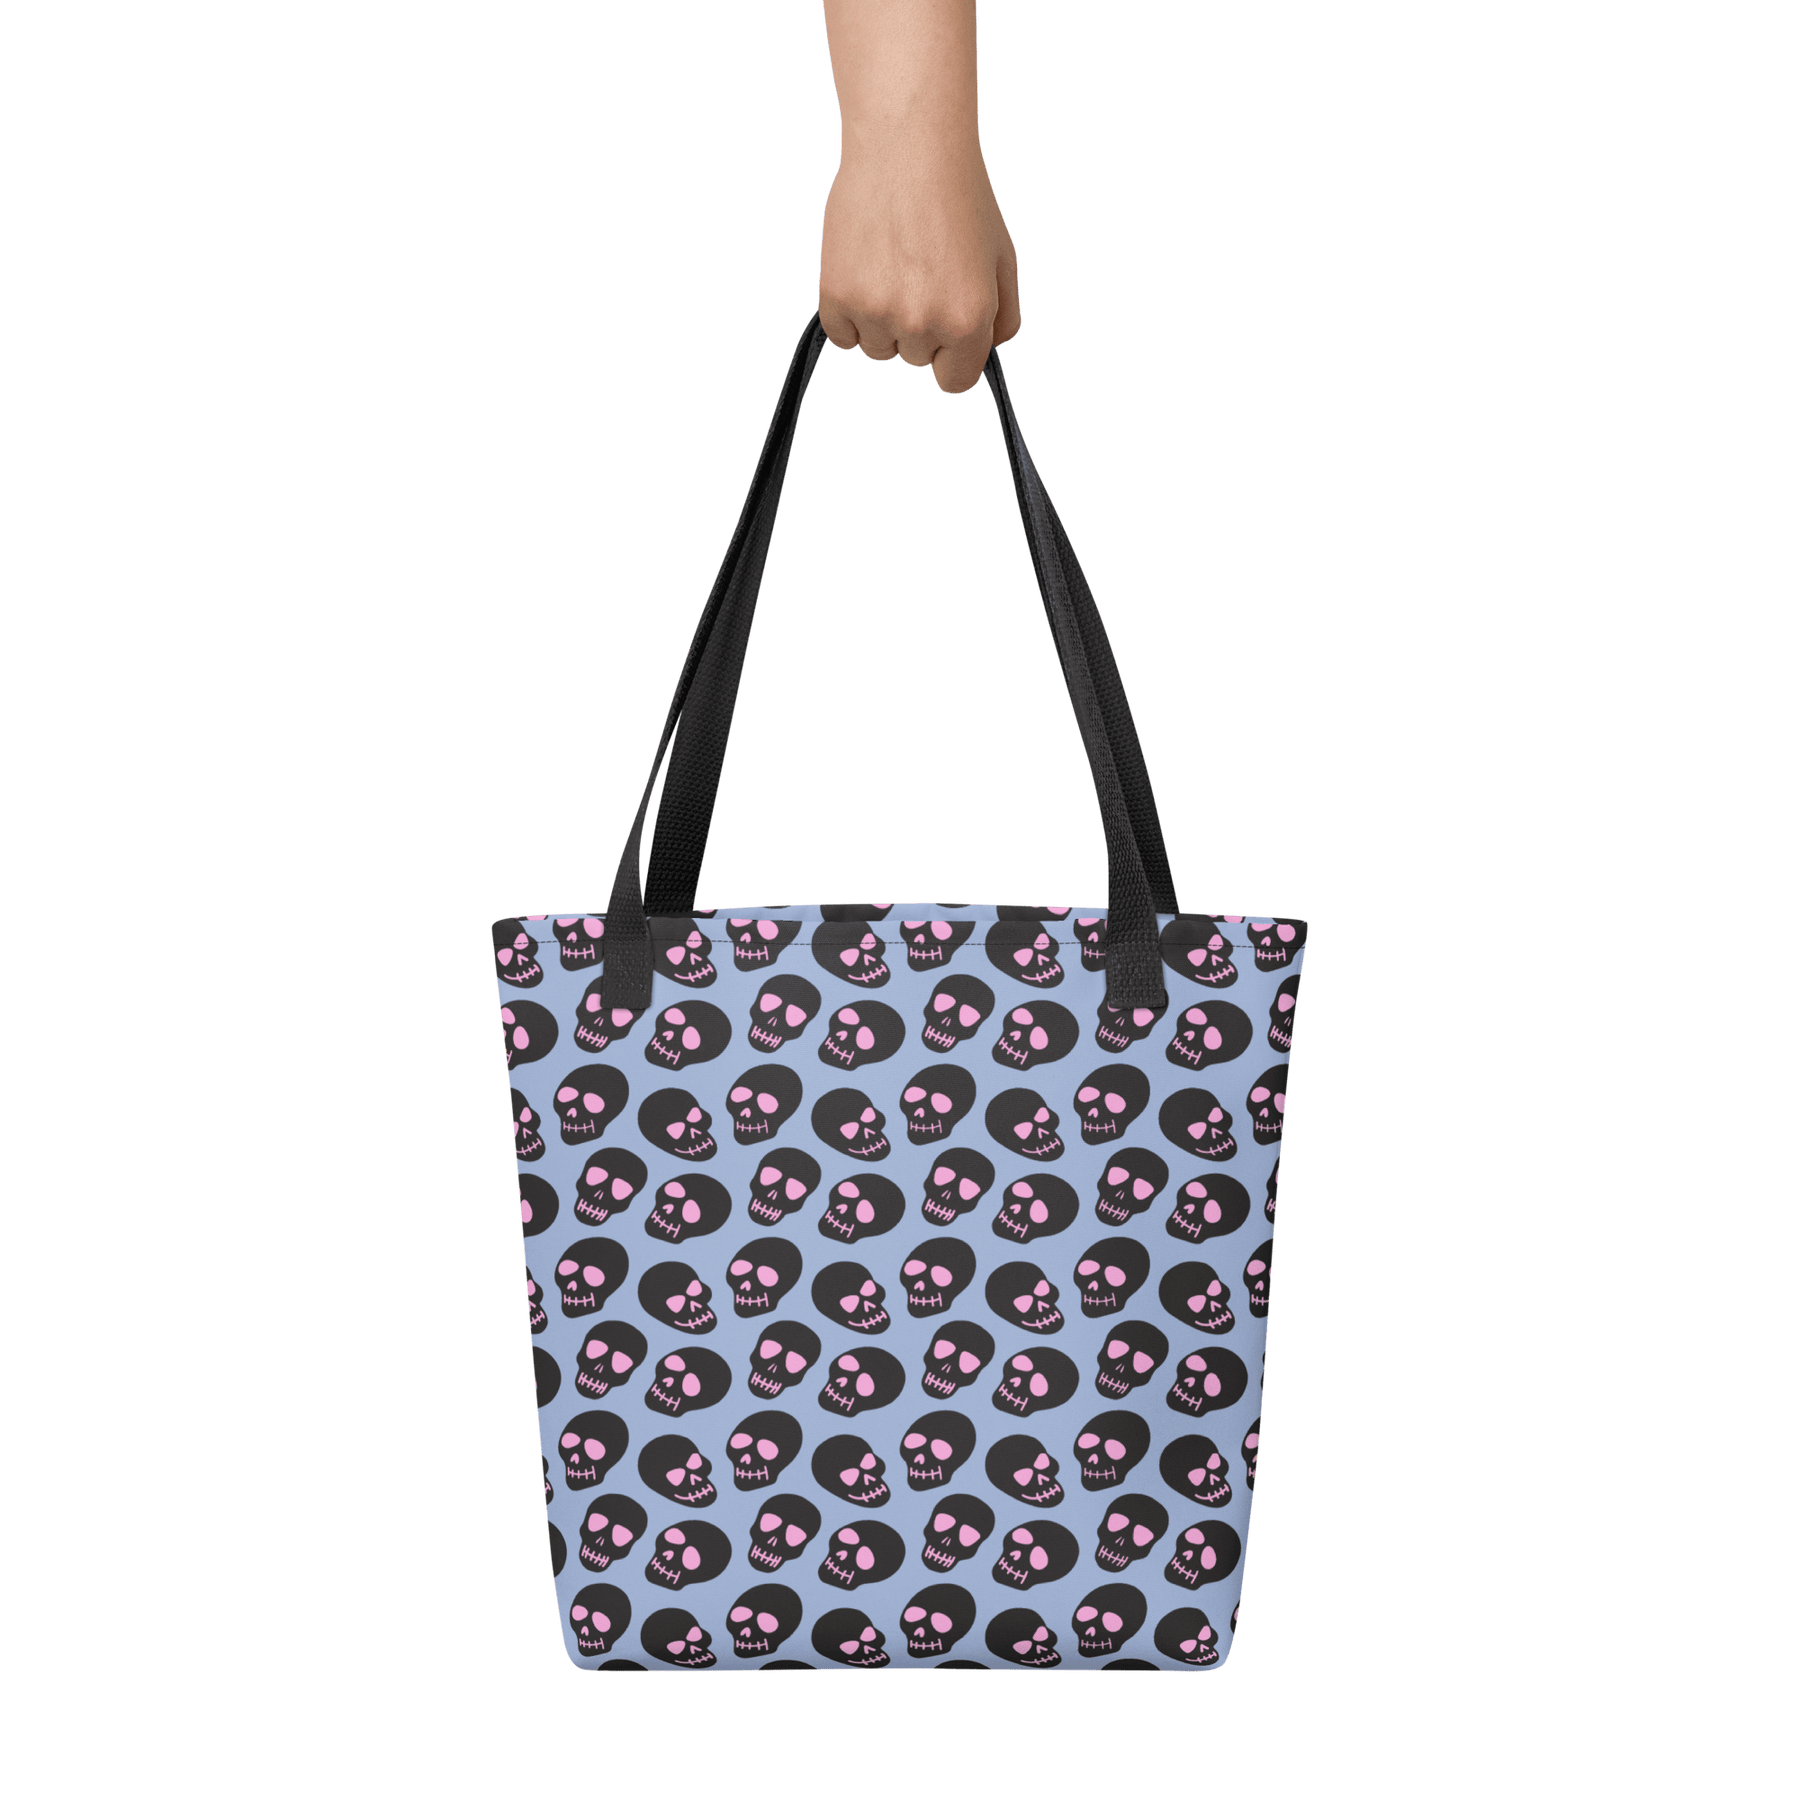 Neon Skull Tote bag - Goth Cloth Co.6166149_4533